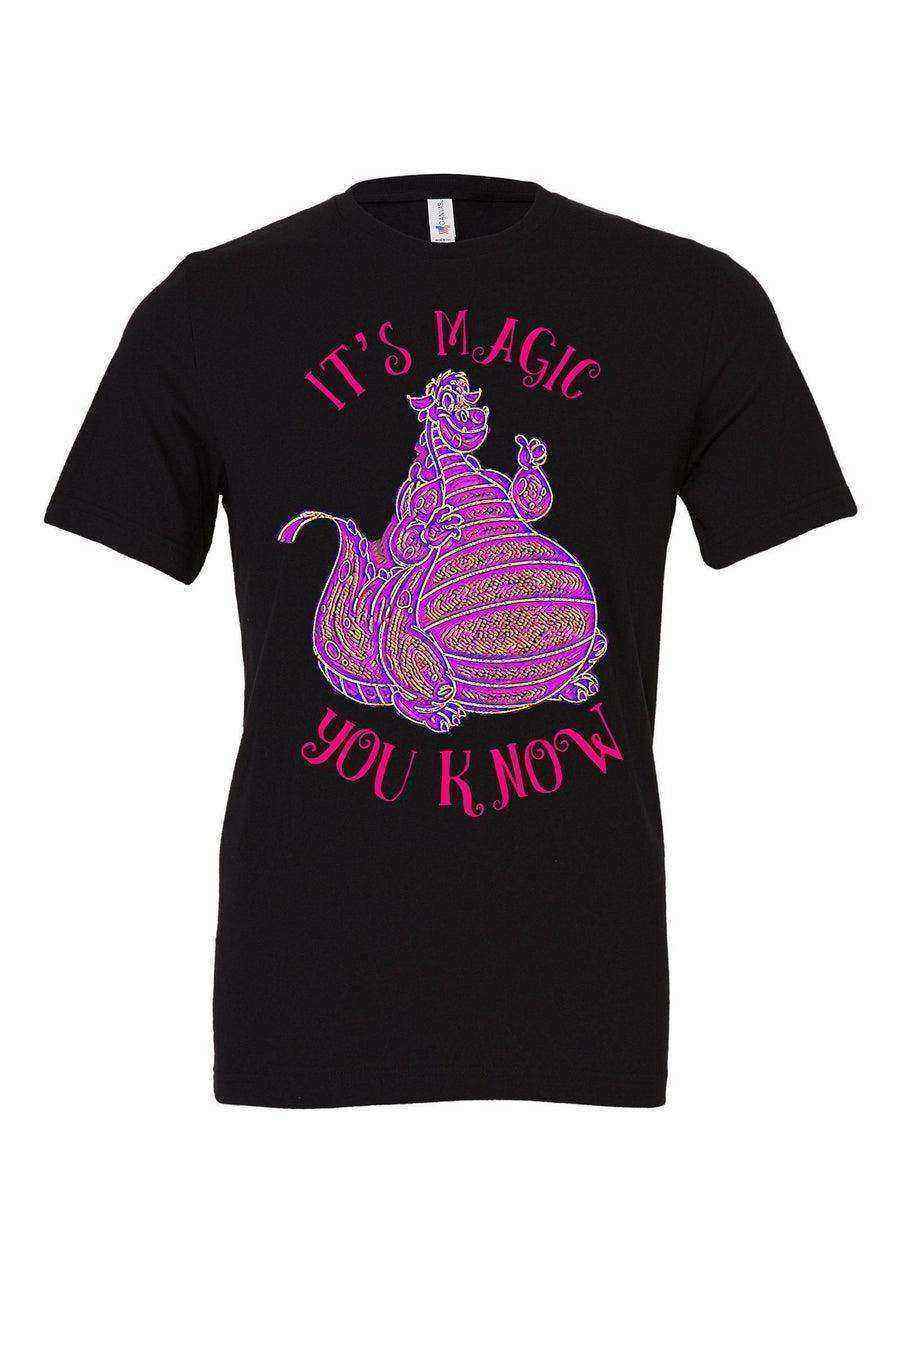 Pete’s Dragon Shirt | Whoa whoa whoa It’s Magic You Know - Dylan's Tees